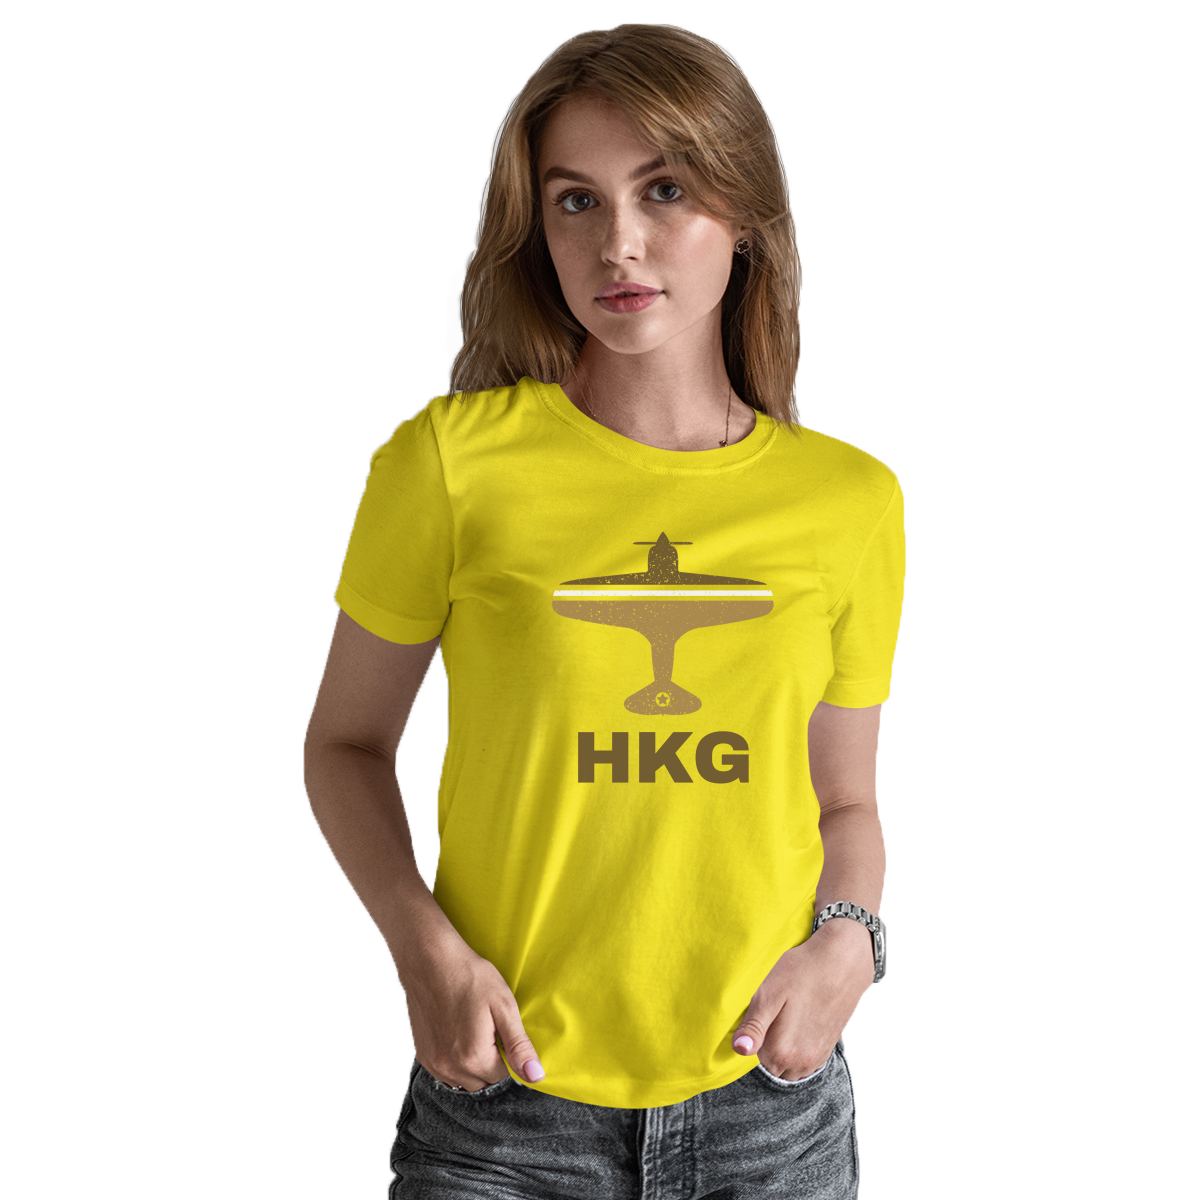 Fly Hong Kong HKG Airport Women's T-shirt | Yellow